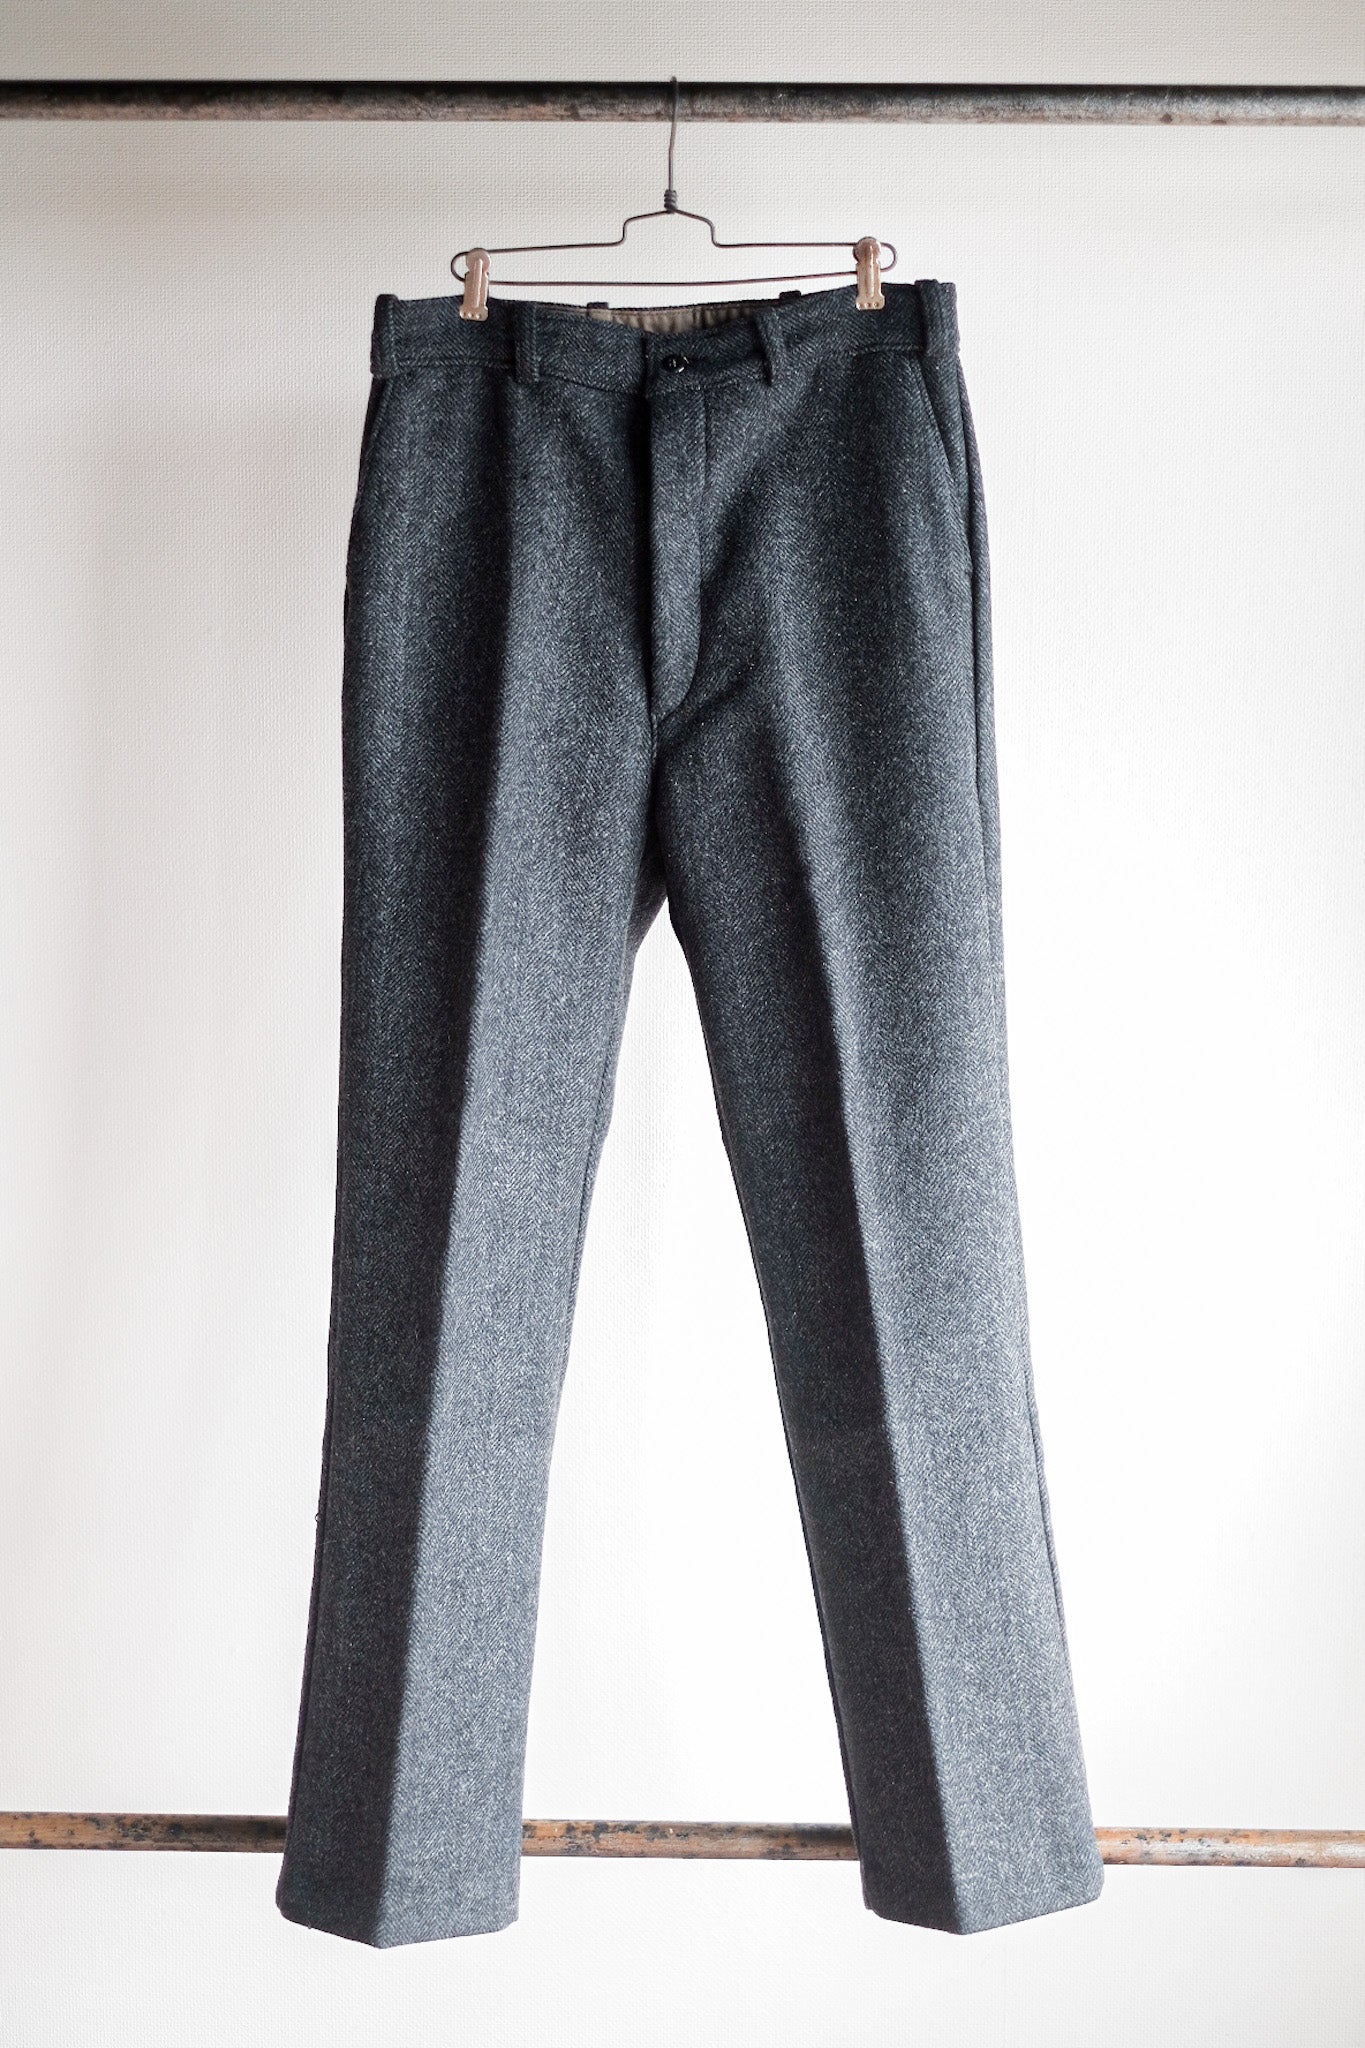 [~ 50's] Pantalon de travail HBT vintage français "Fabric pascal" "Stock mort"